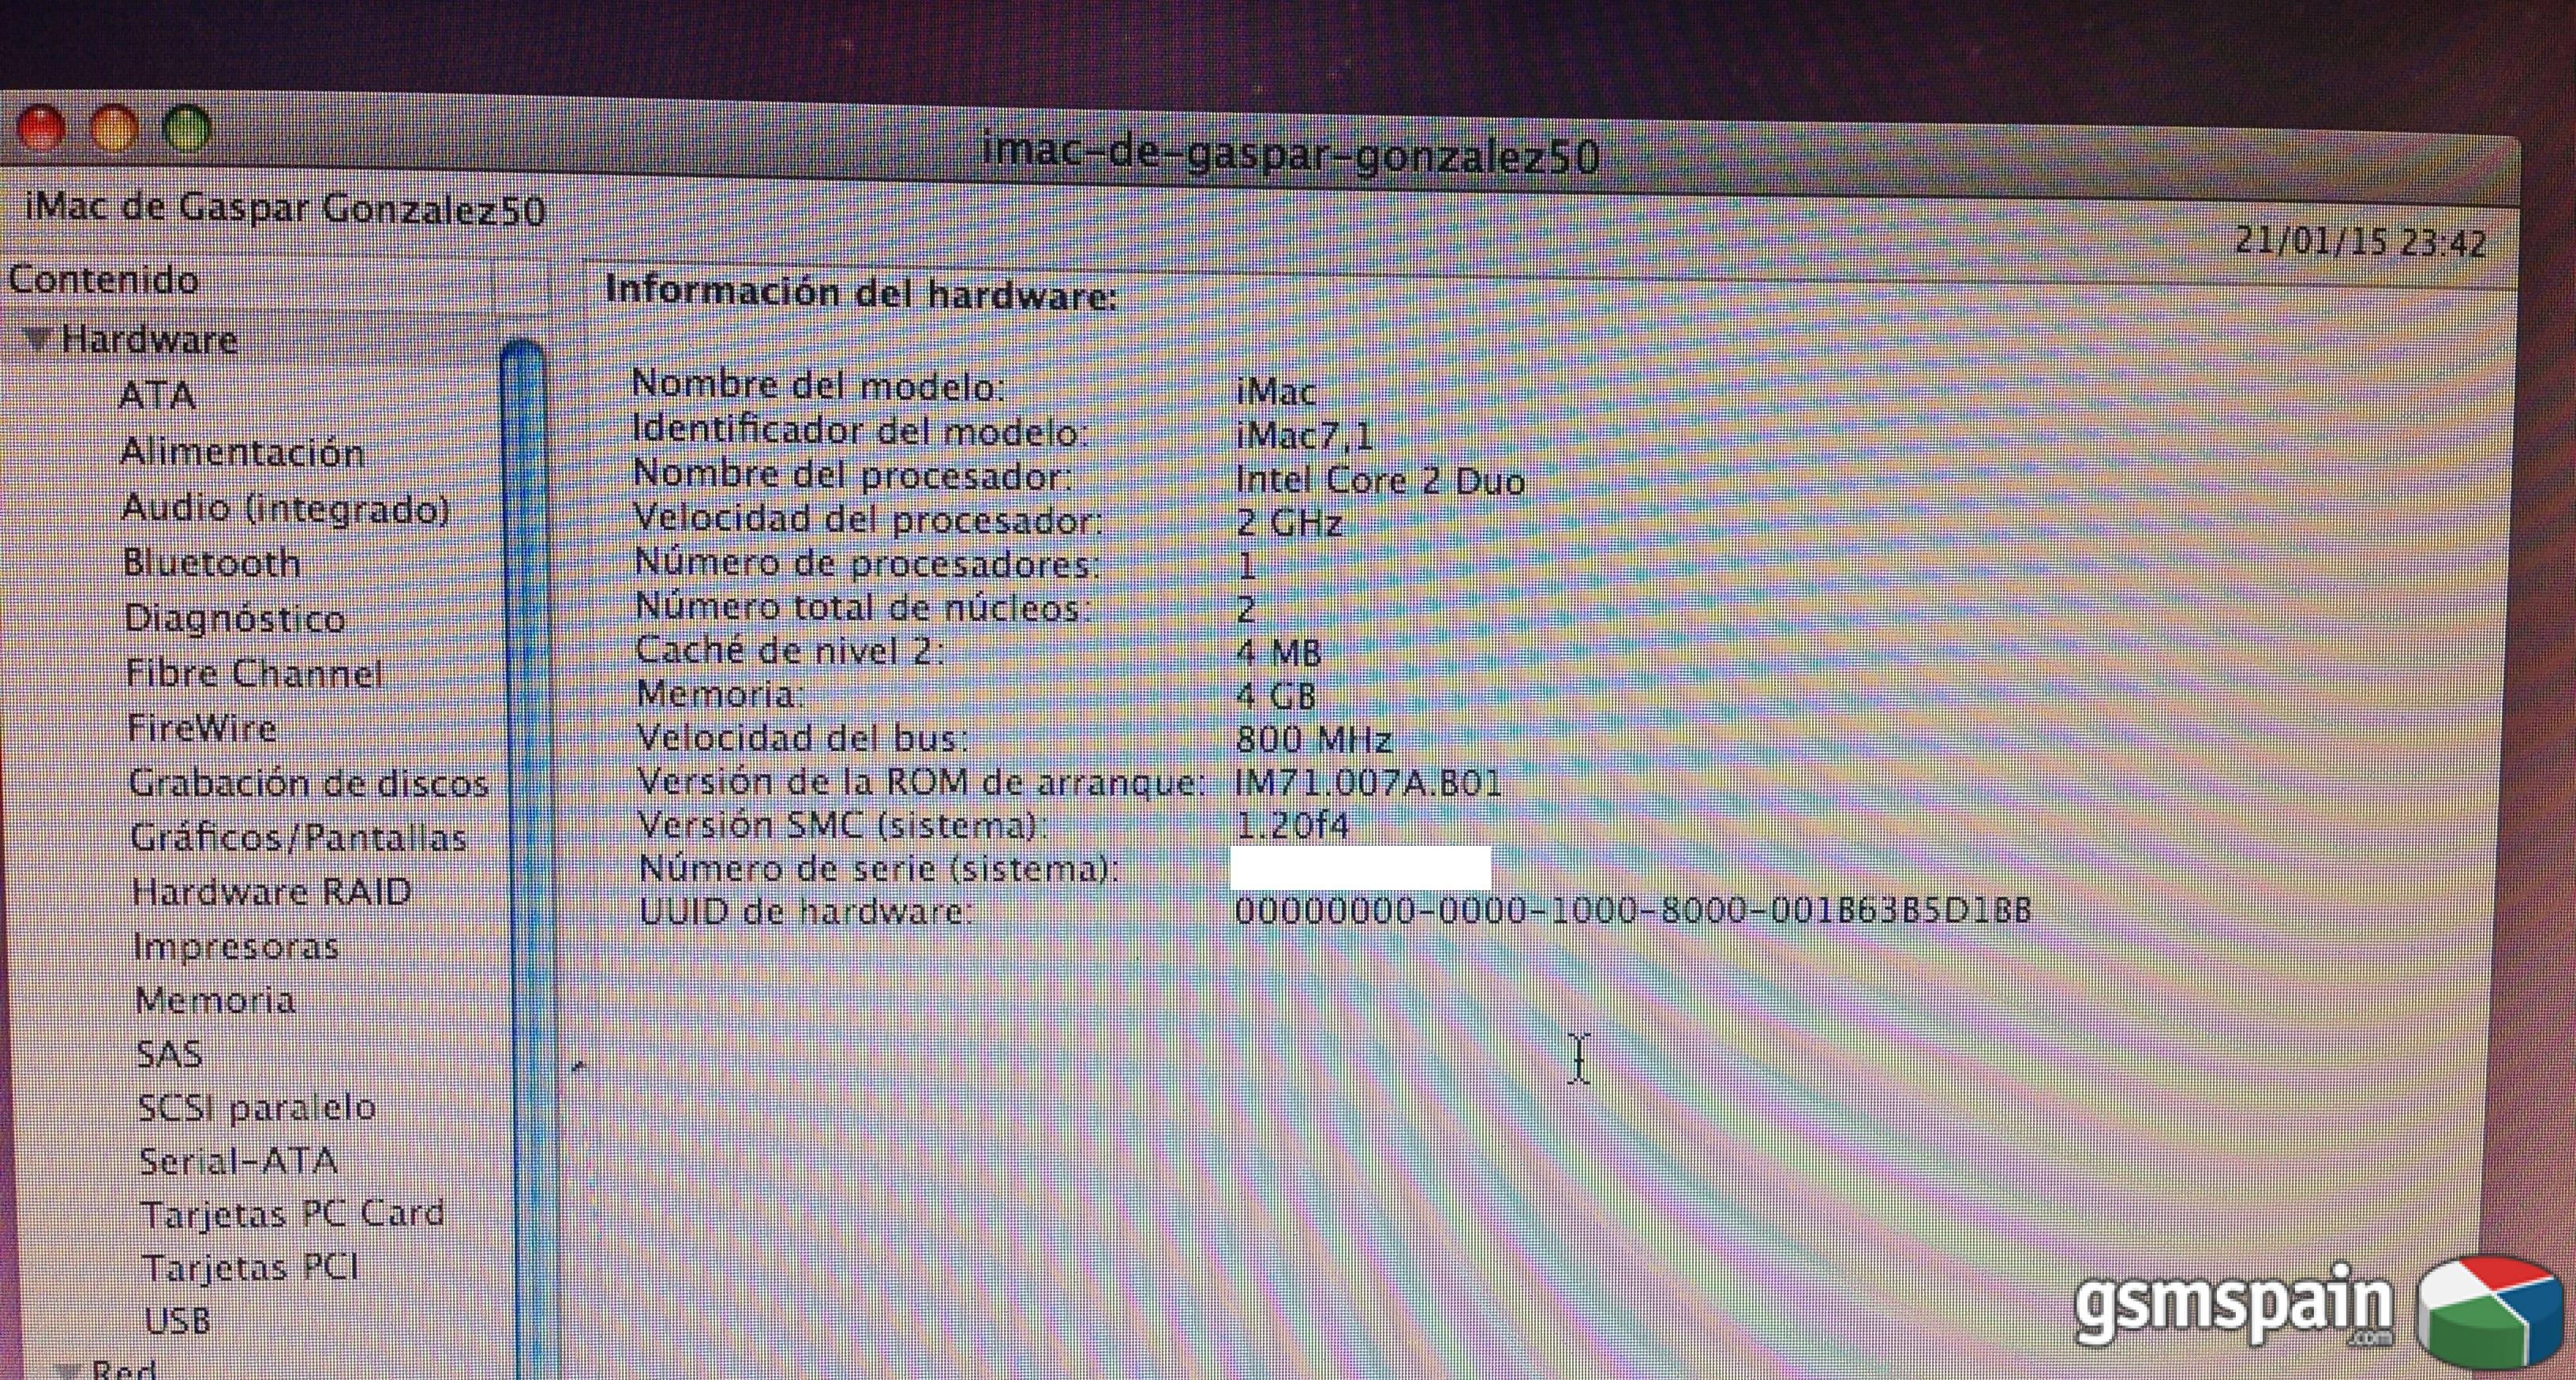 [VENDO] iMac 20 pulgadas del 2007 reformado en 2012 BARATO!